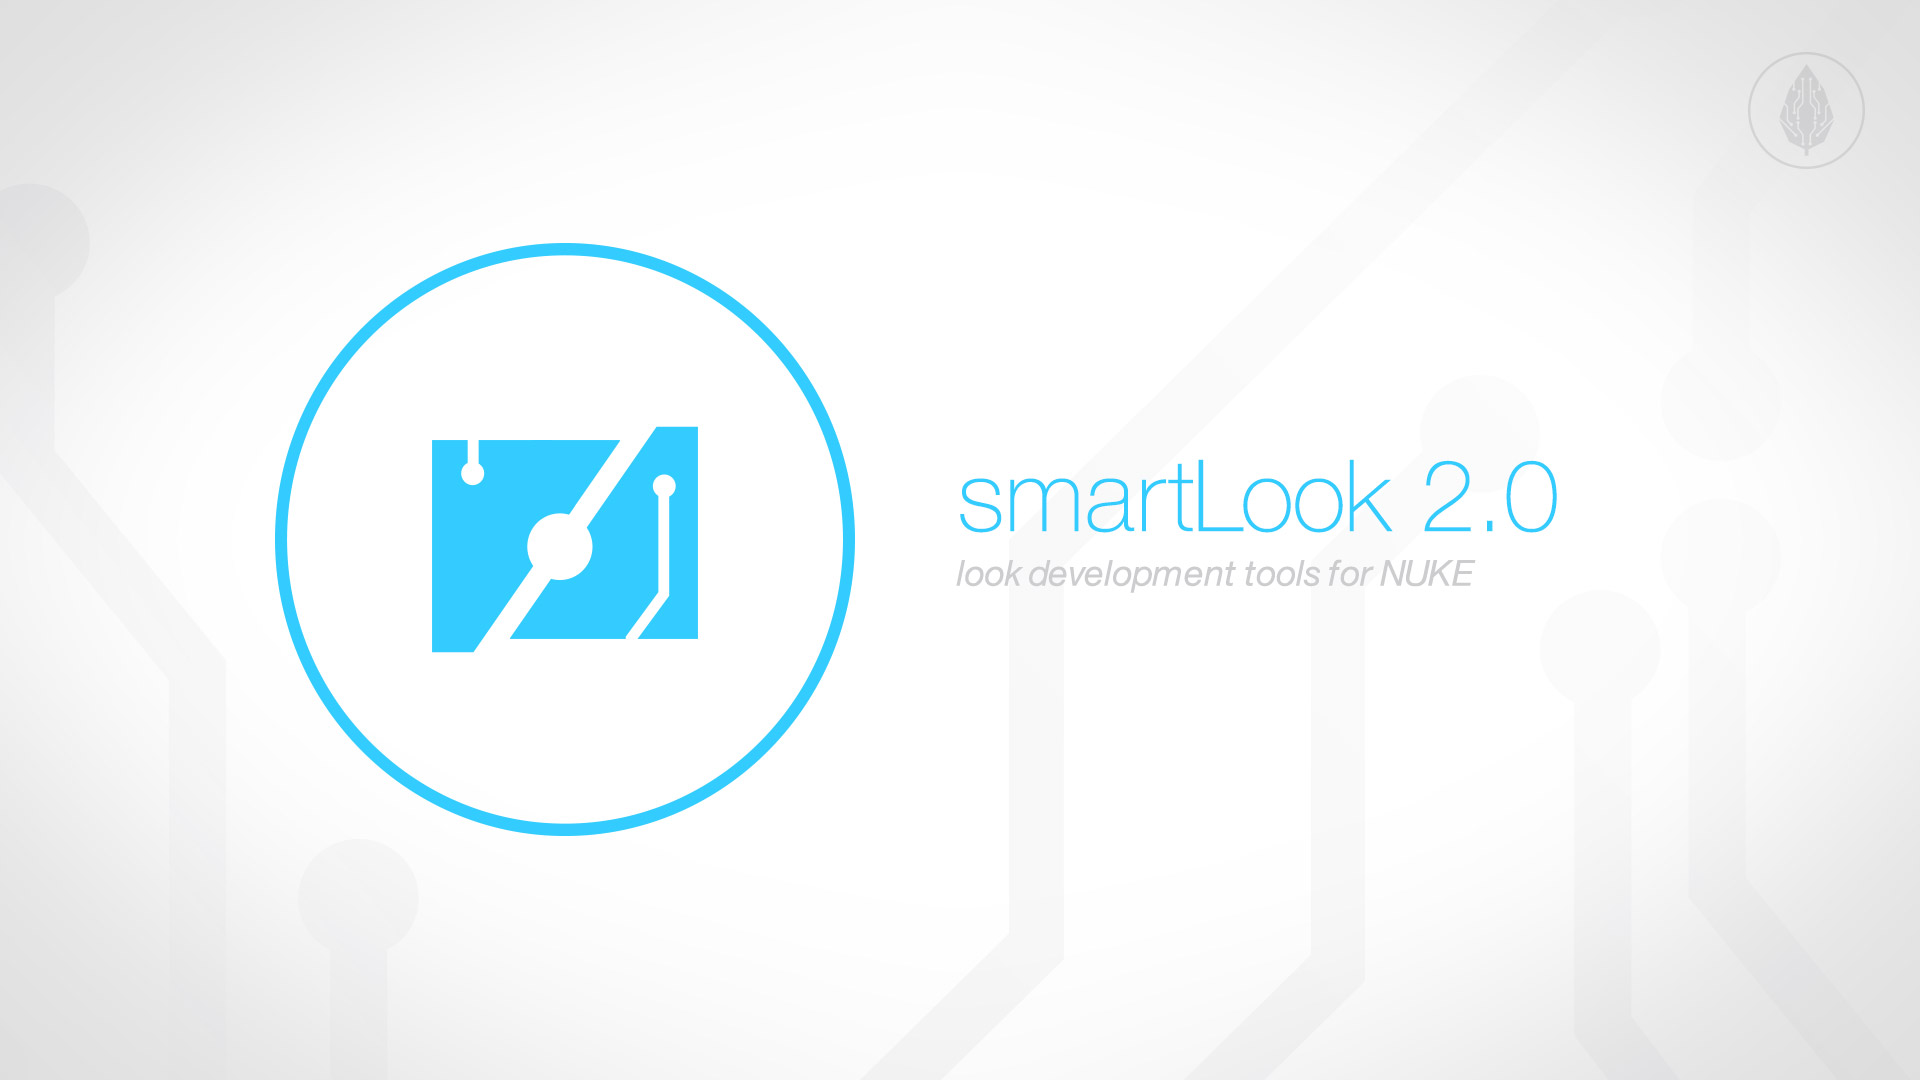 Published smartLook 2.0